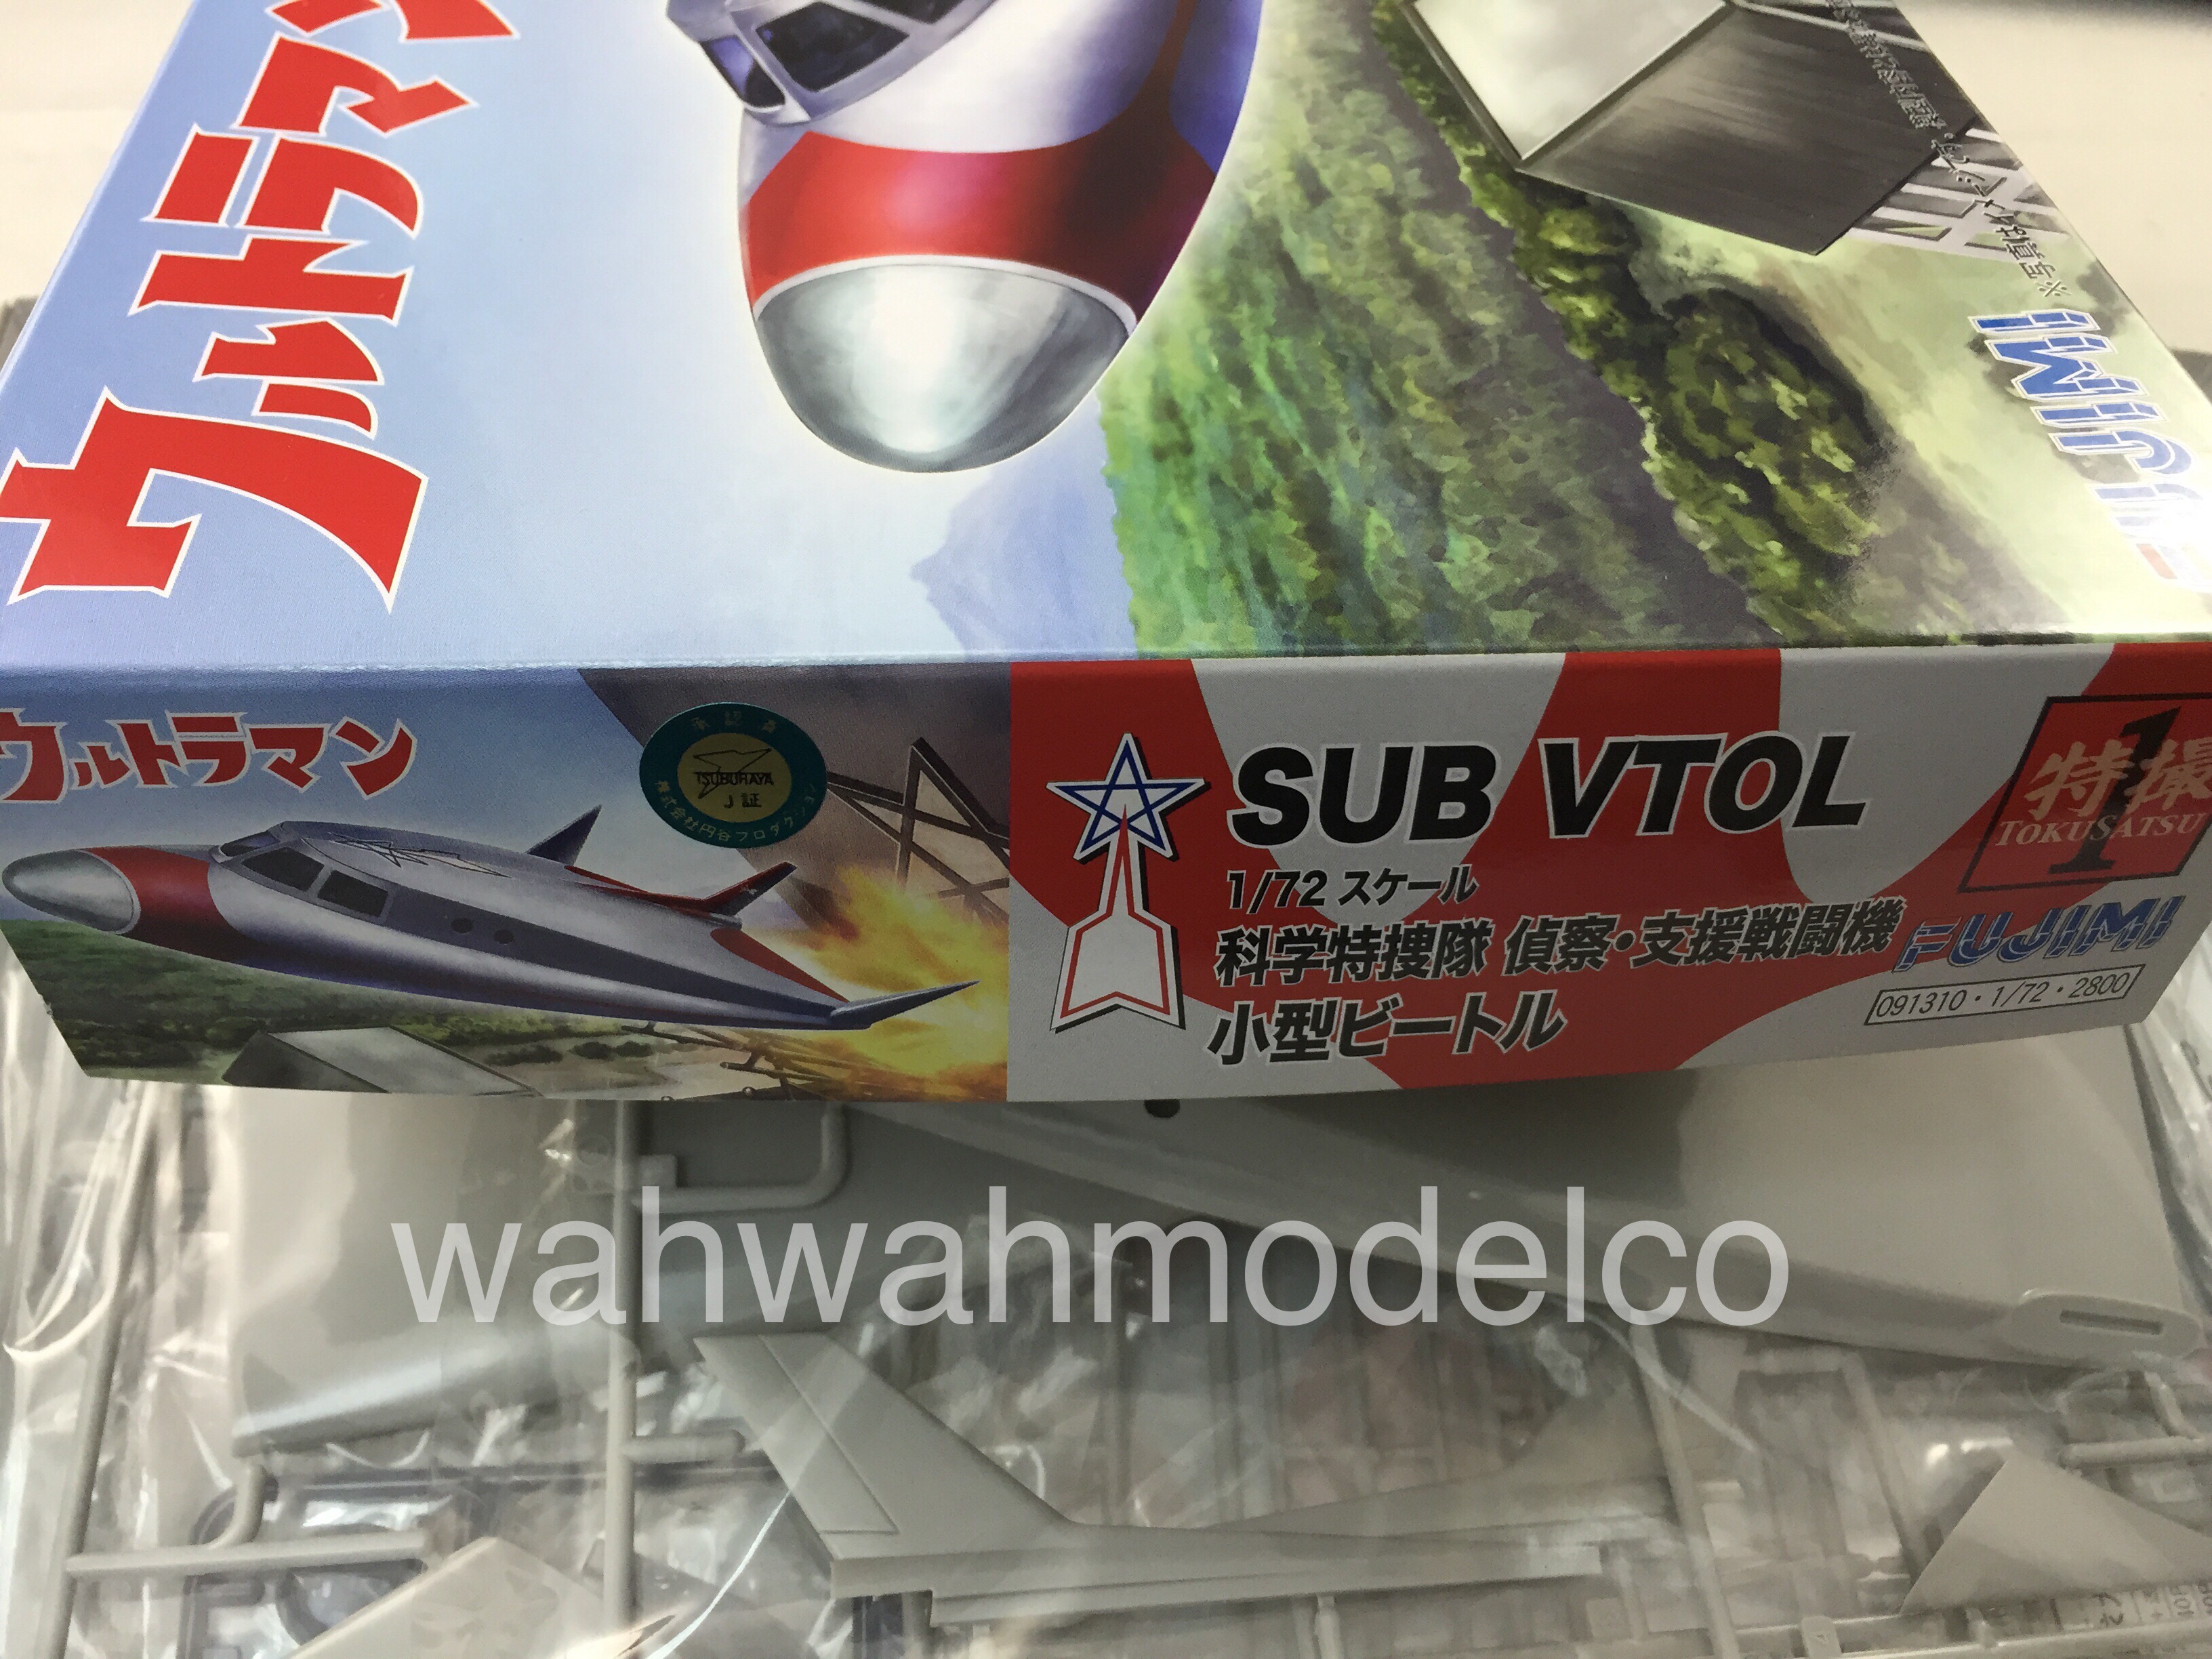 Fujimi 1/72 Ultraman Sub VTOL 091310 